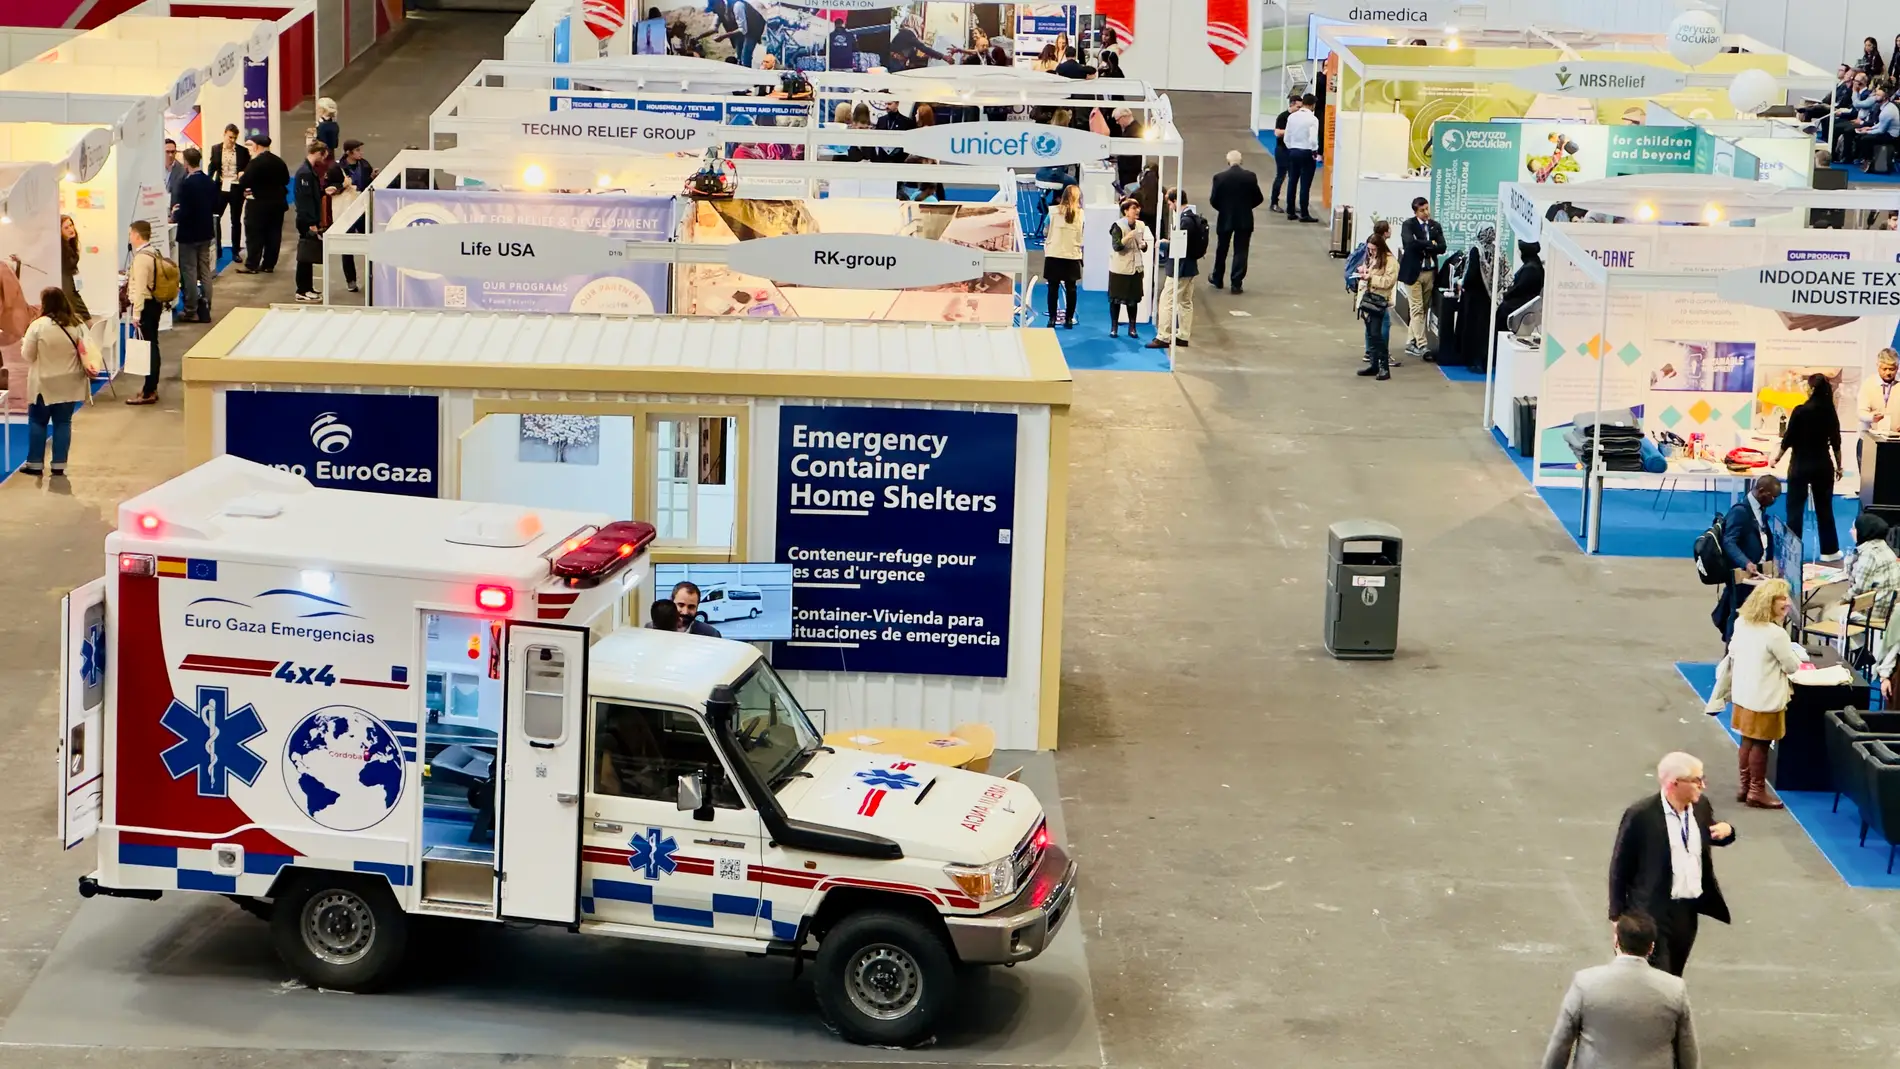 La empresa cordobesa presenta en Aidex23 una ambulancia 4x4 y un contenedor de 20 pies diseñados para auxilio y acogida de víctimas de desastres naturales o conflictos bélicos